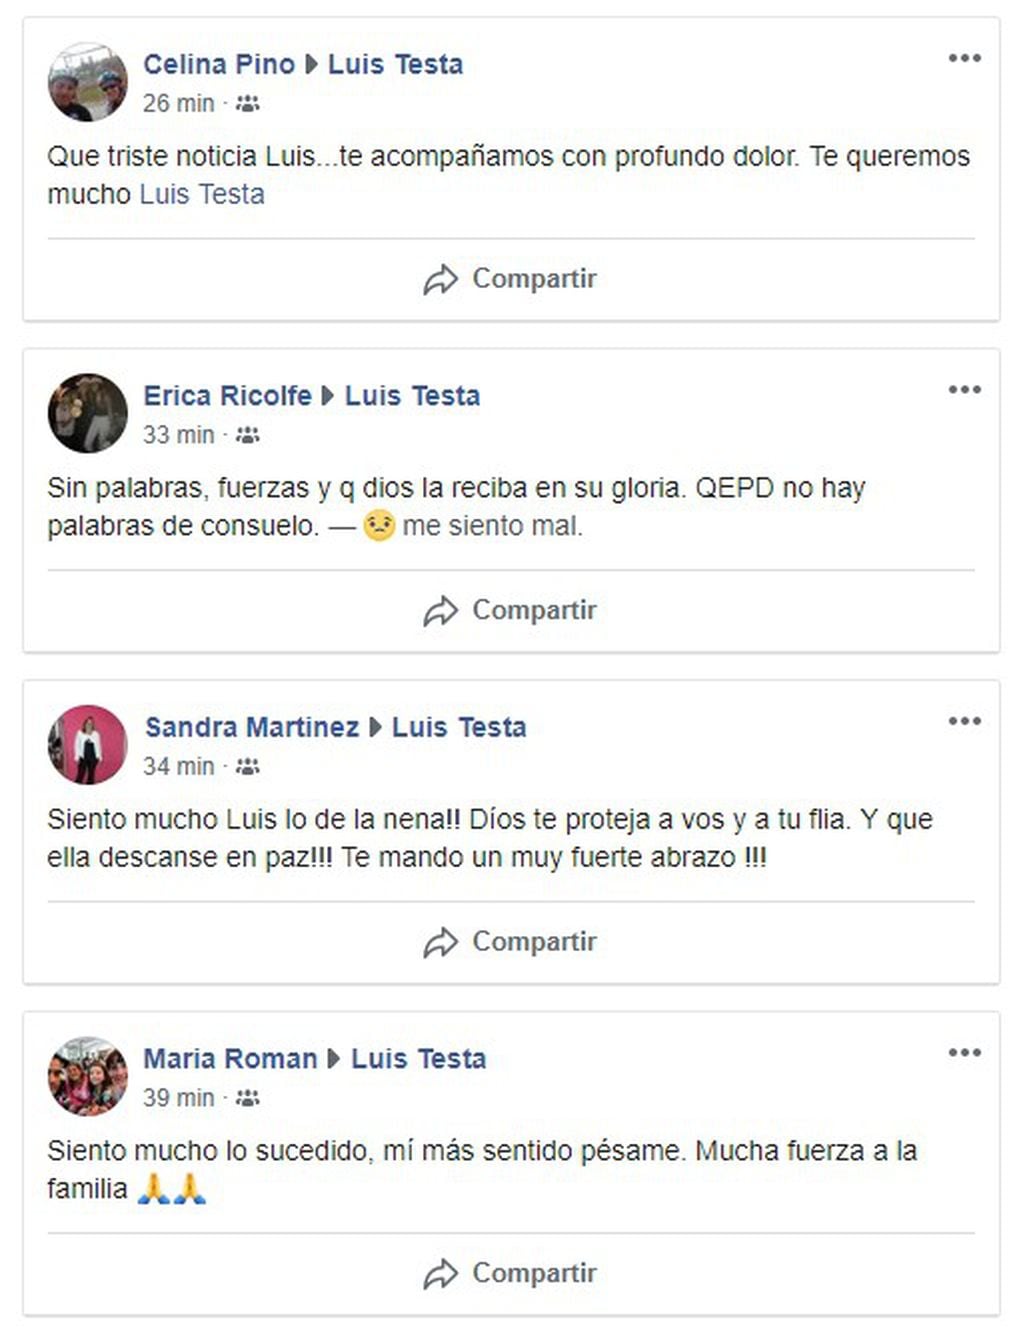 Mensajes en el muro de Facebook de Luis Testa.